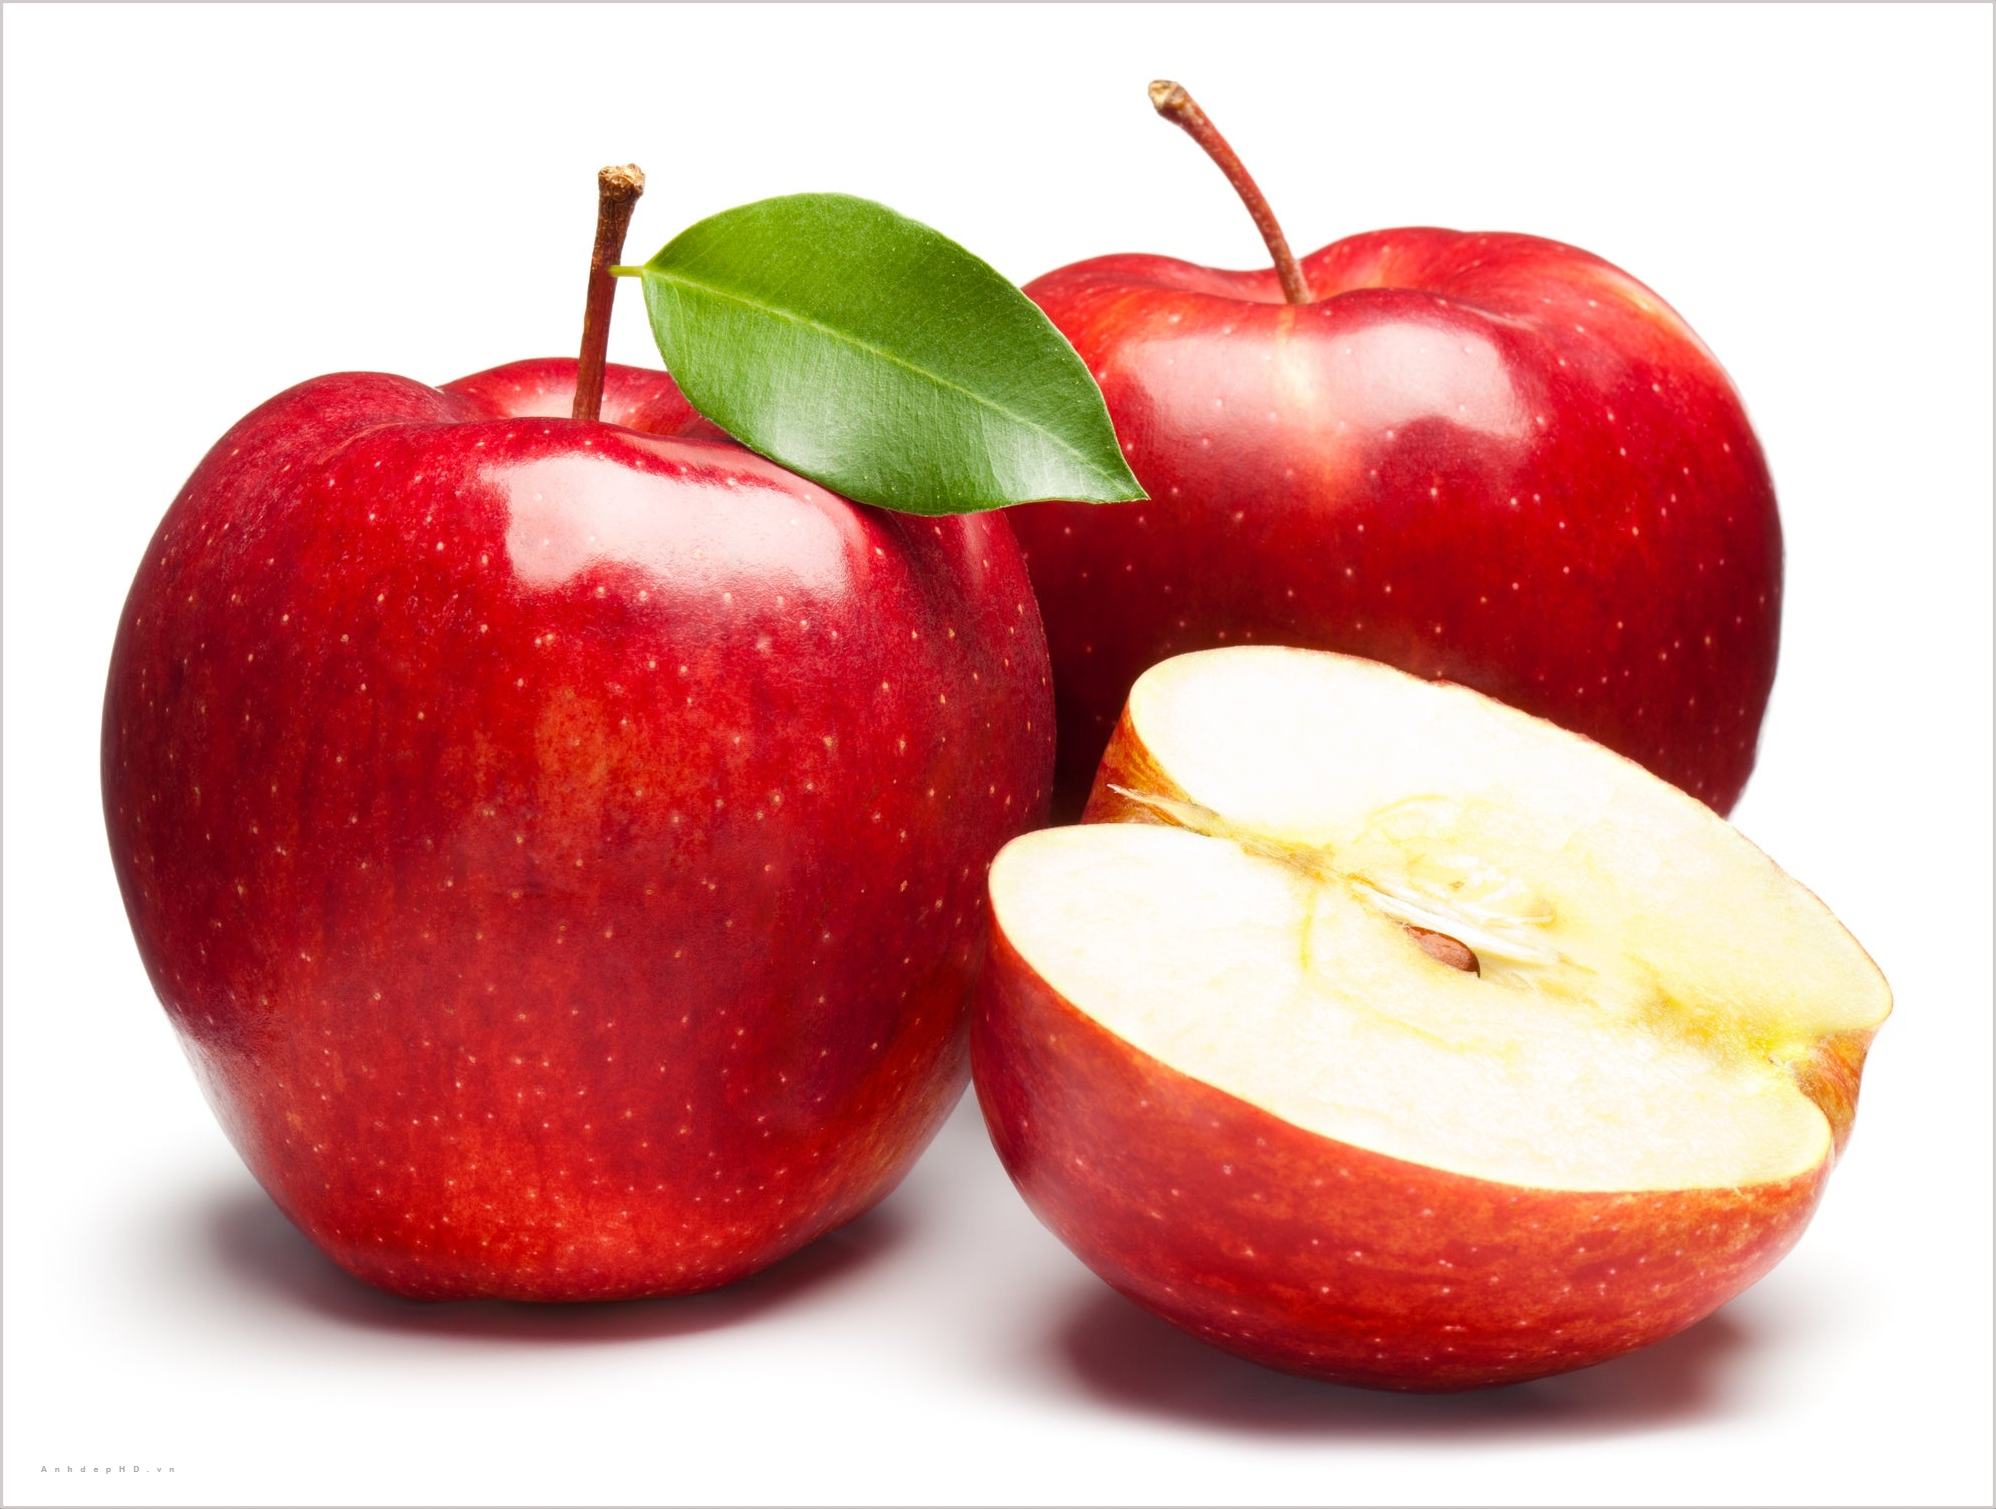 Ý nghĩa của táo đỏ trong văn hóa phương Đông và phương Tây